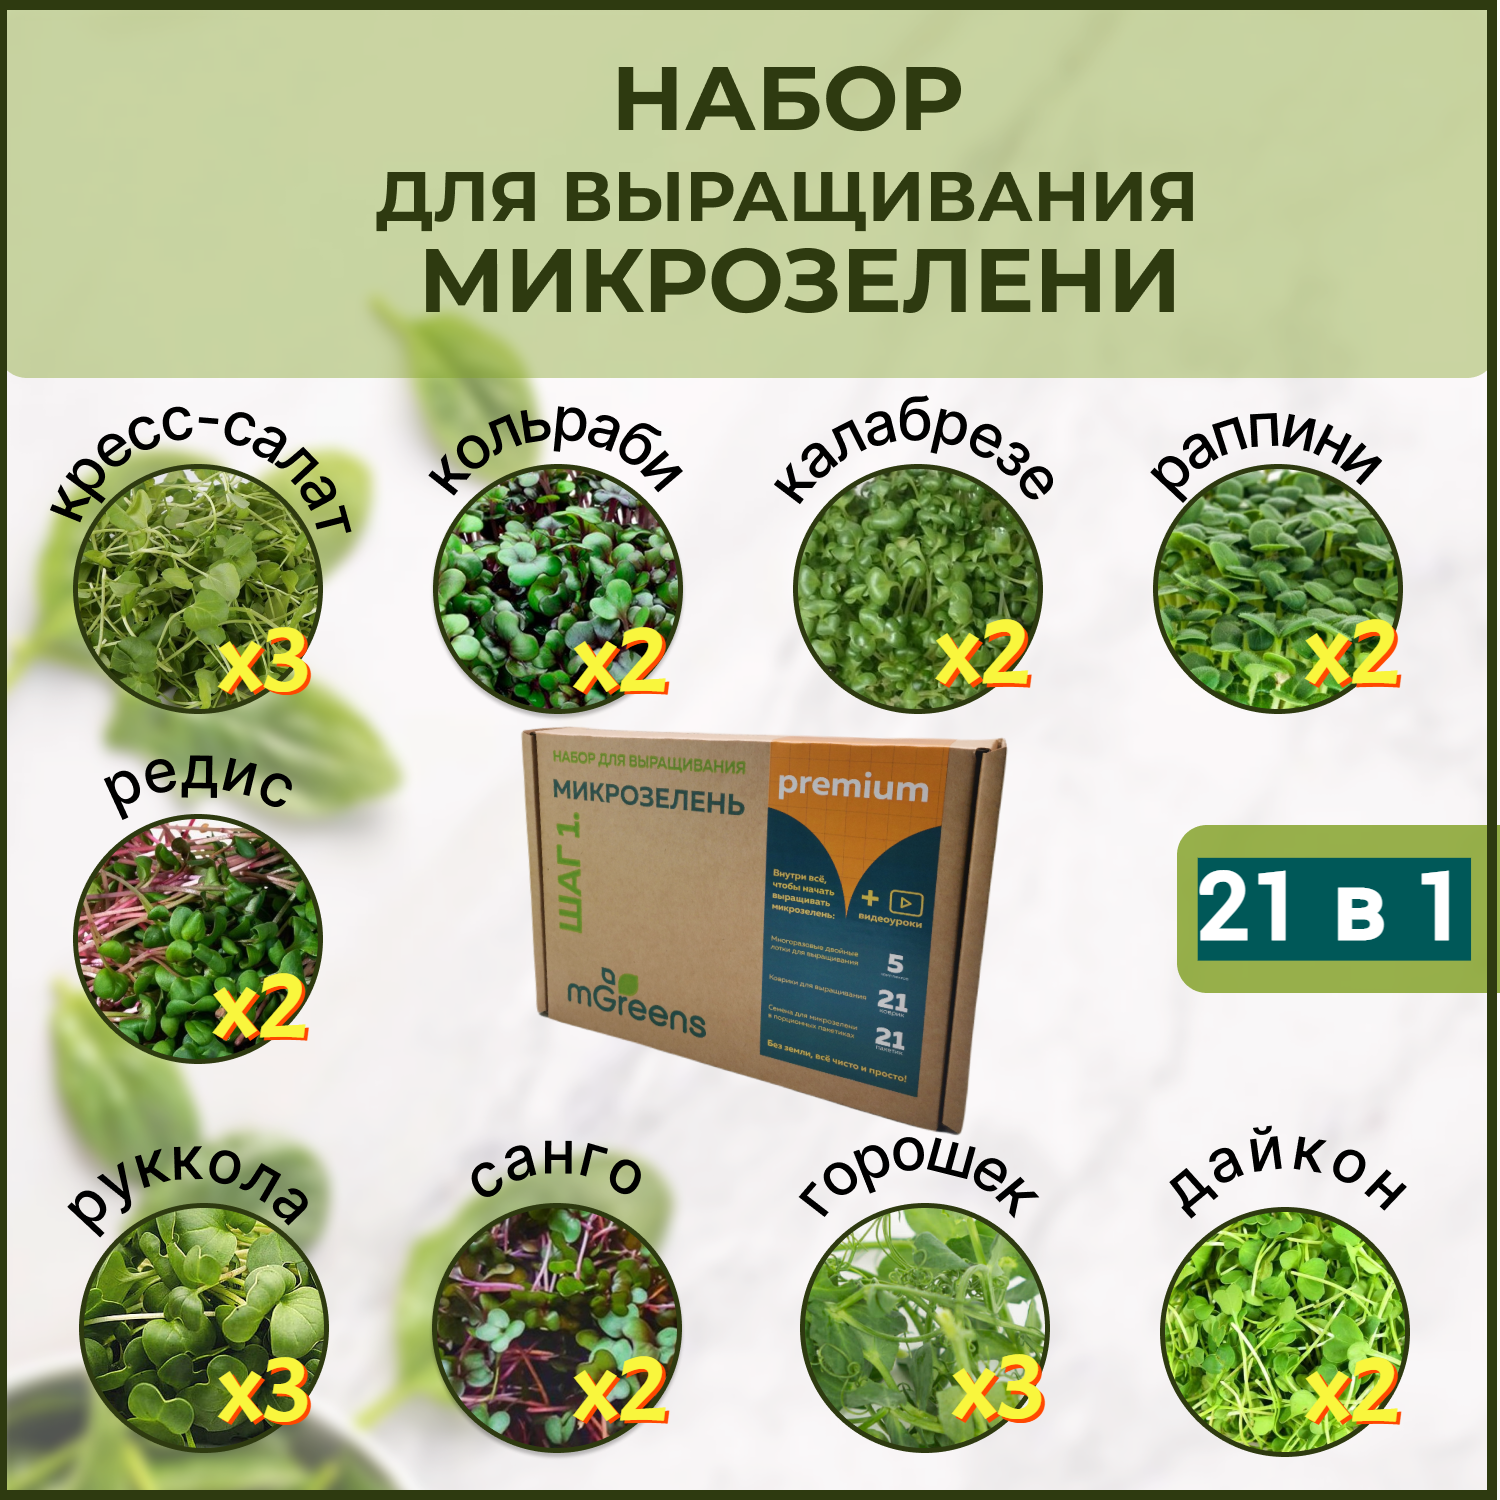 Микрозелень Premium - набор для выращивания дома